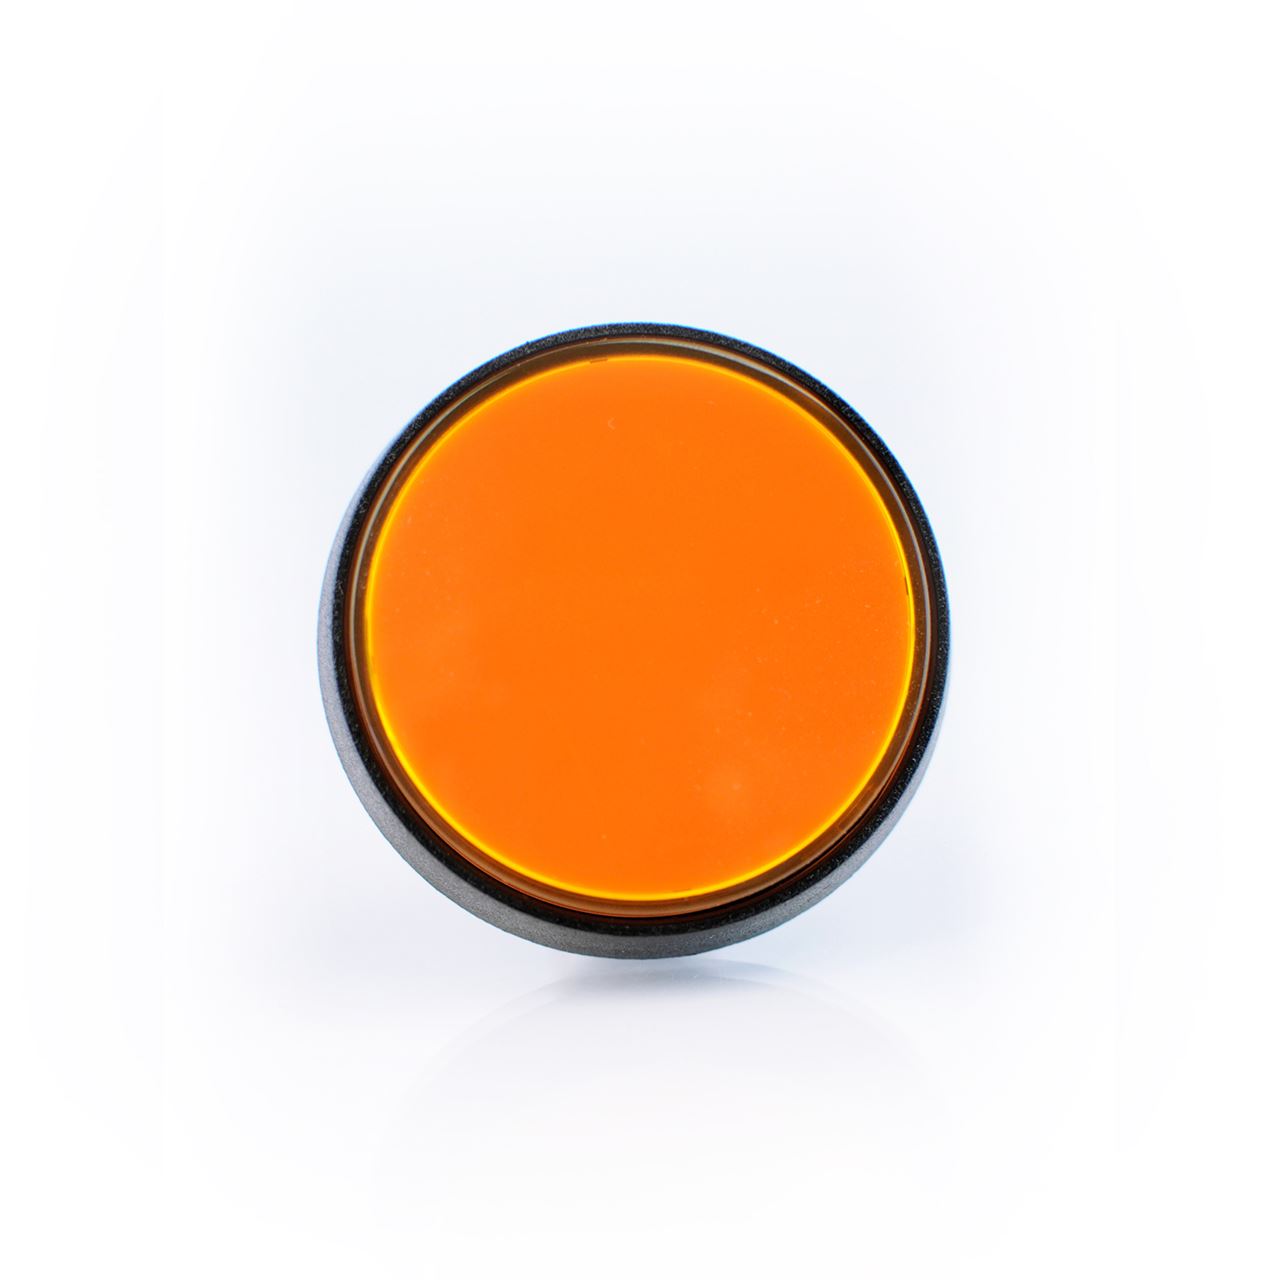 orange purchase button